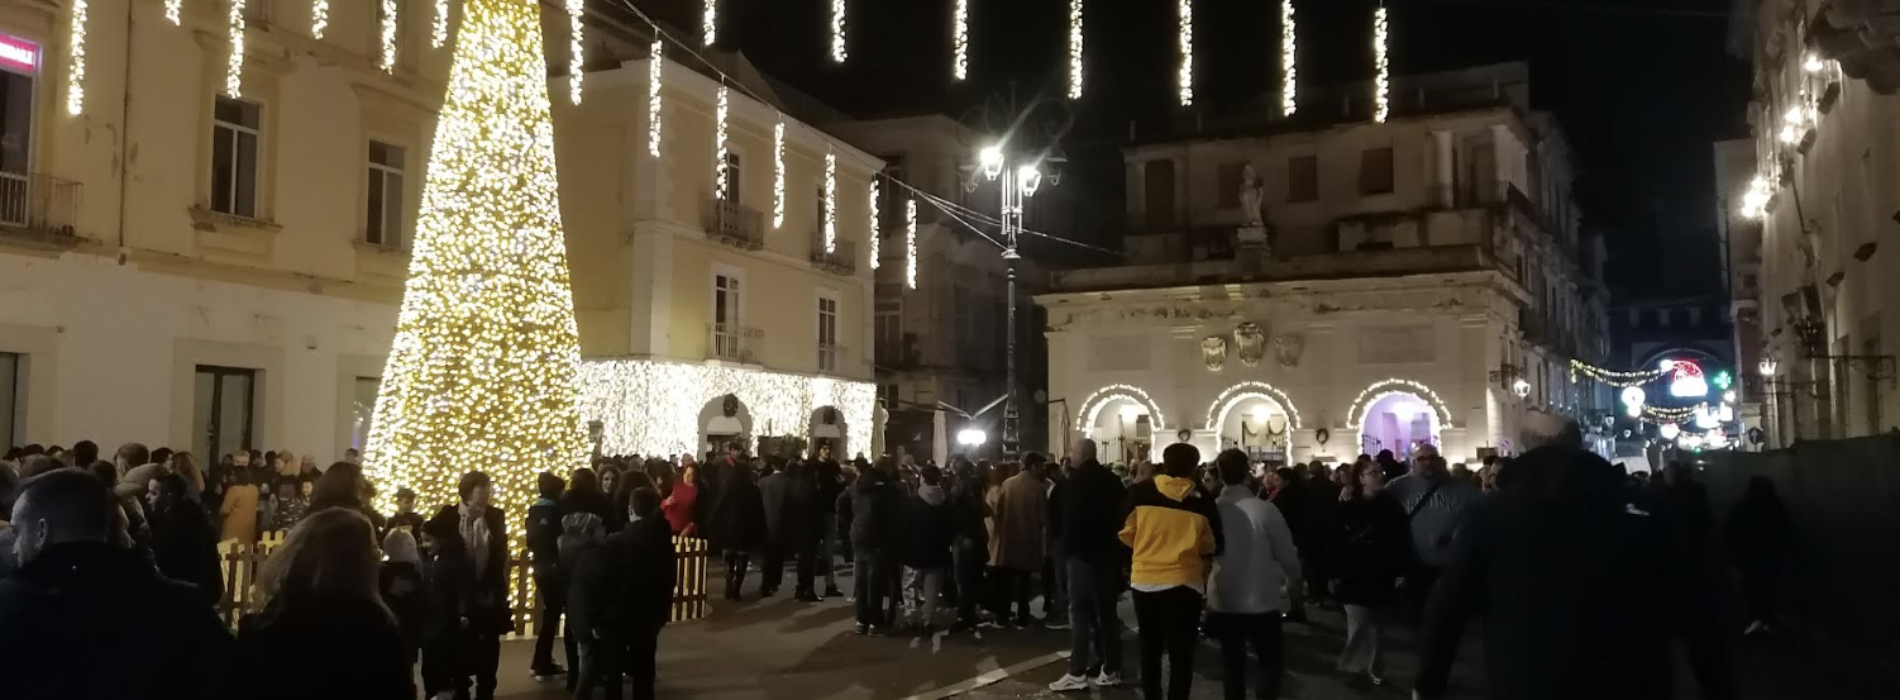 Natale a Capua. Il ricco cartellone di eventi al via dal 7 dicembre